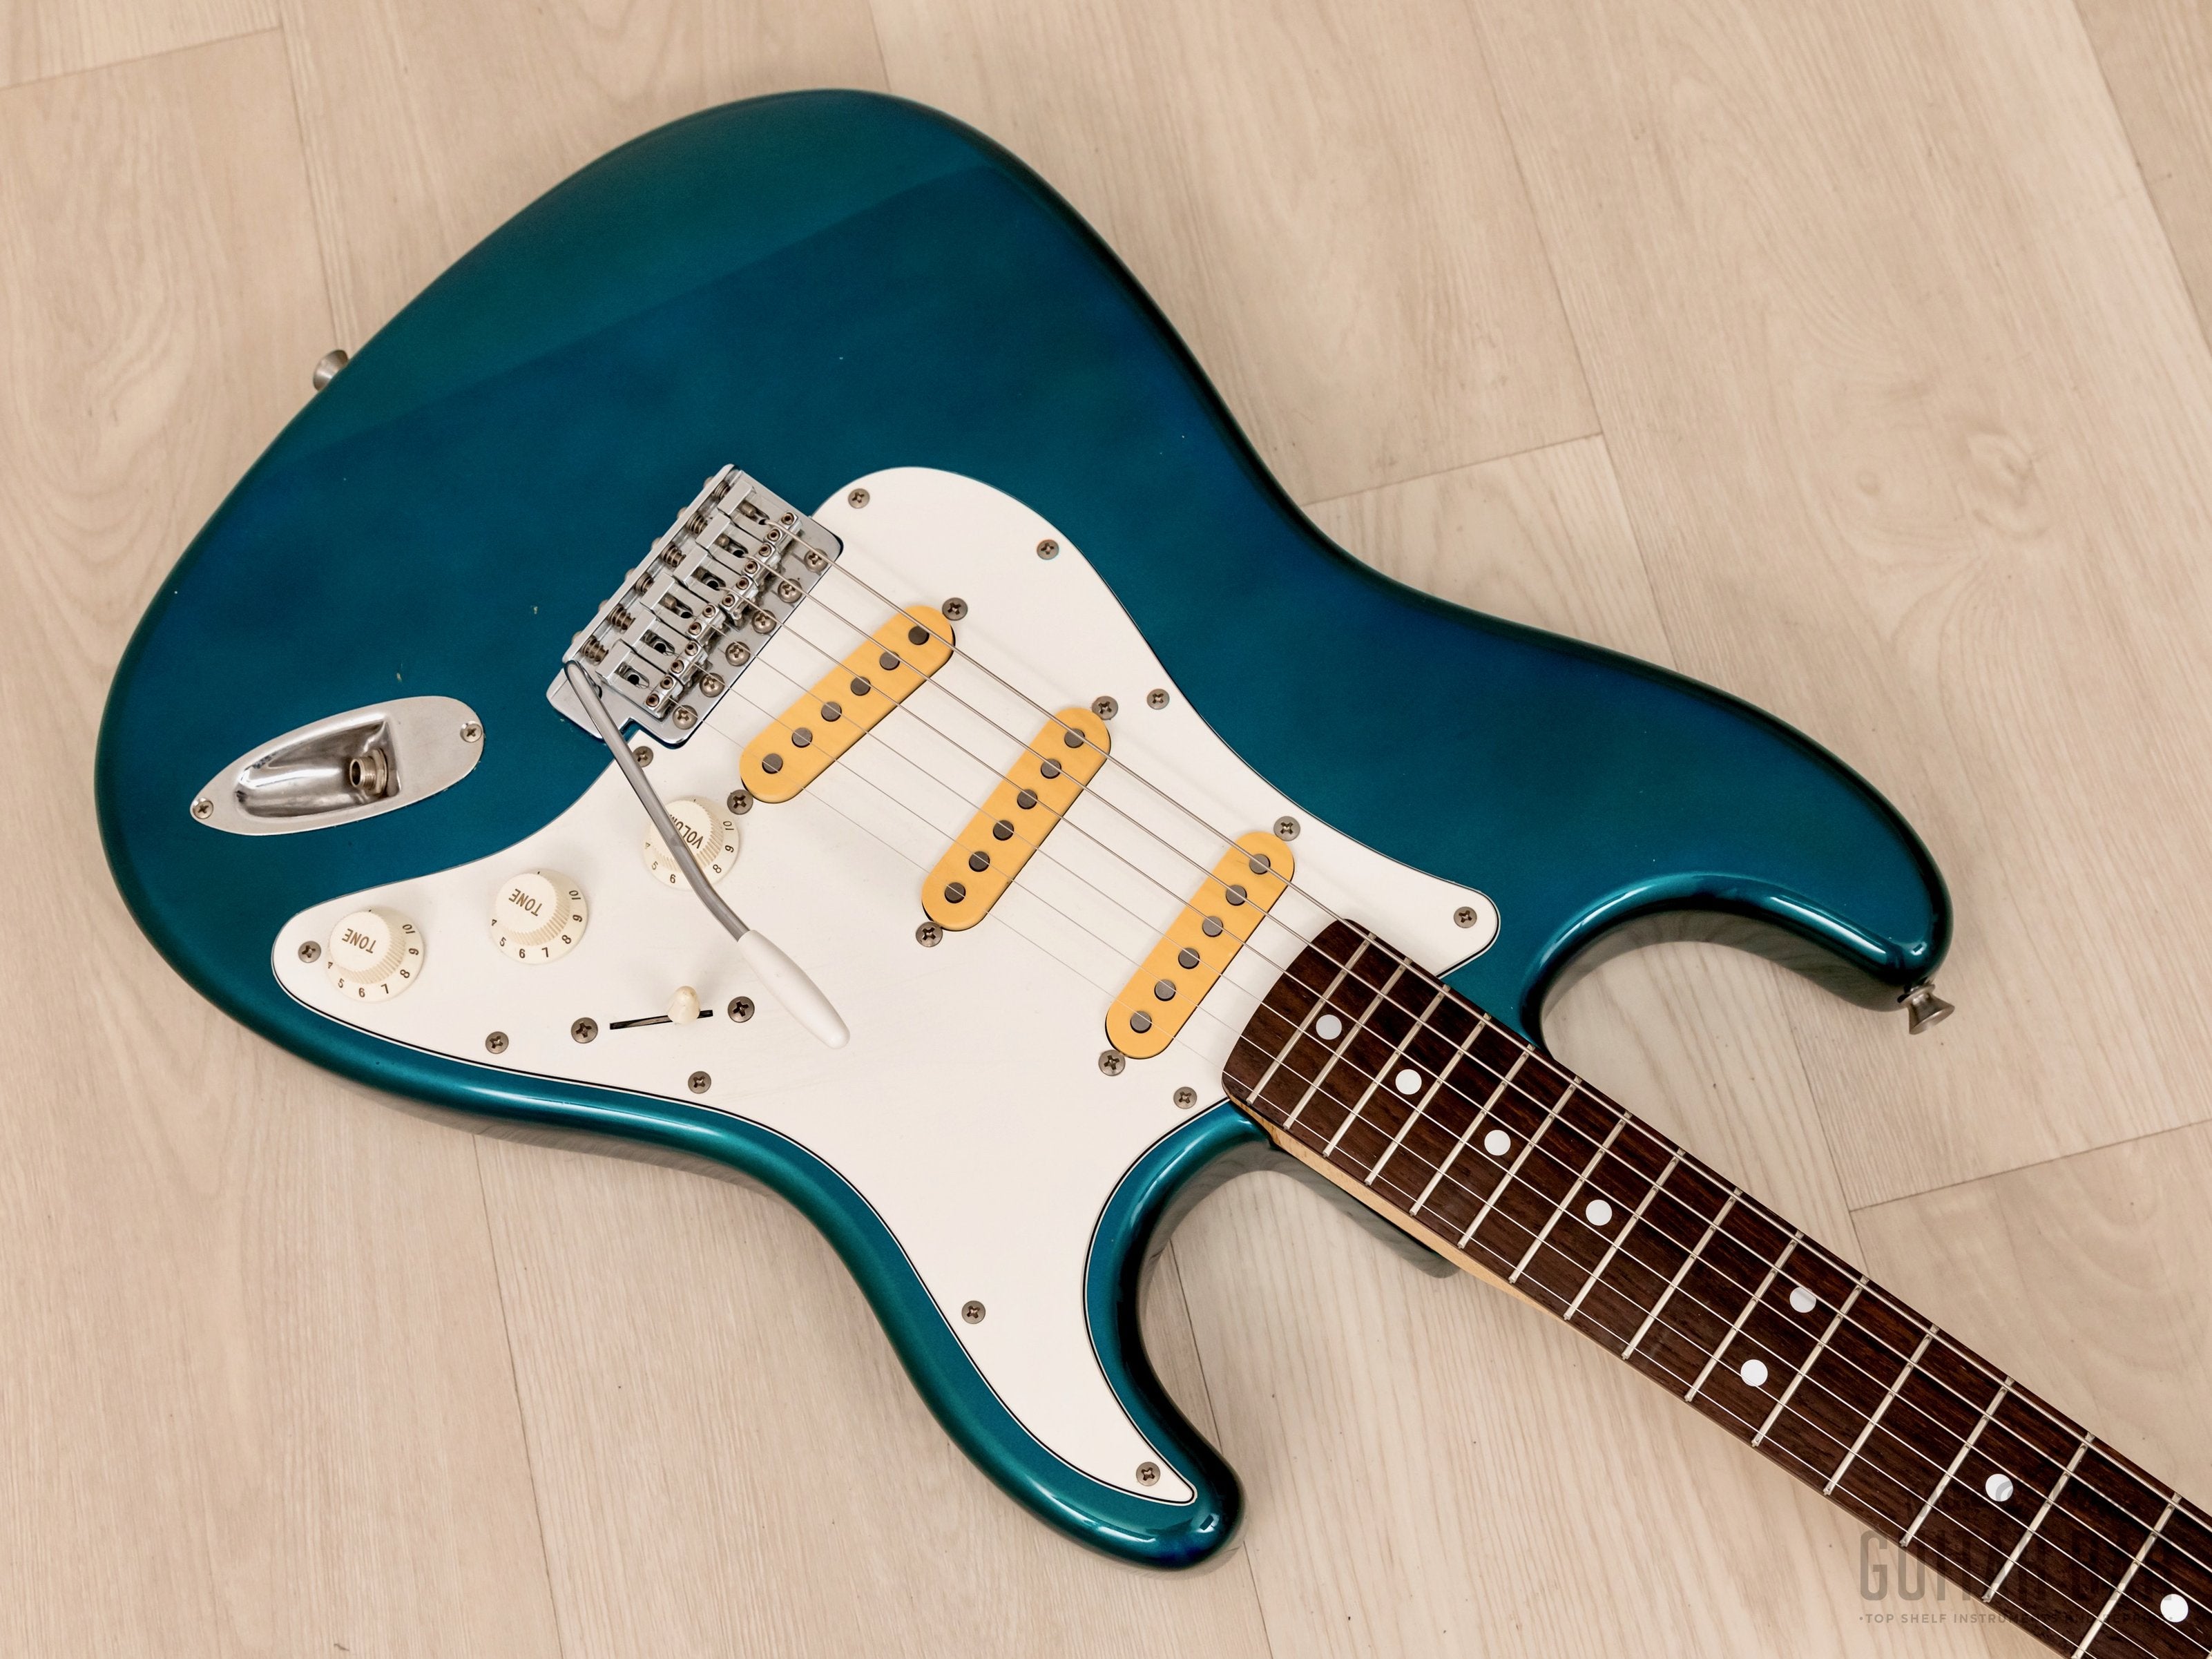 1991 Fender Stratocaster '72 Vintage Reissue Order Made ST72-500 Lake Placid Blue, Japan MIJ Fujigen